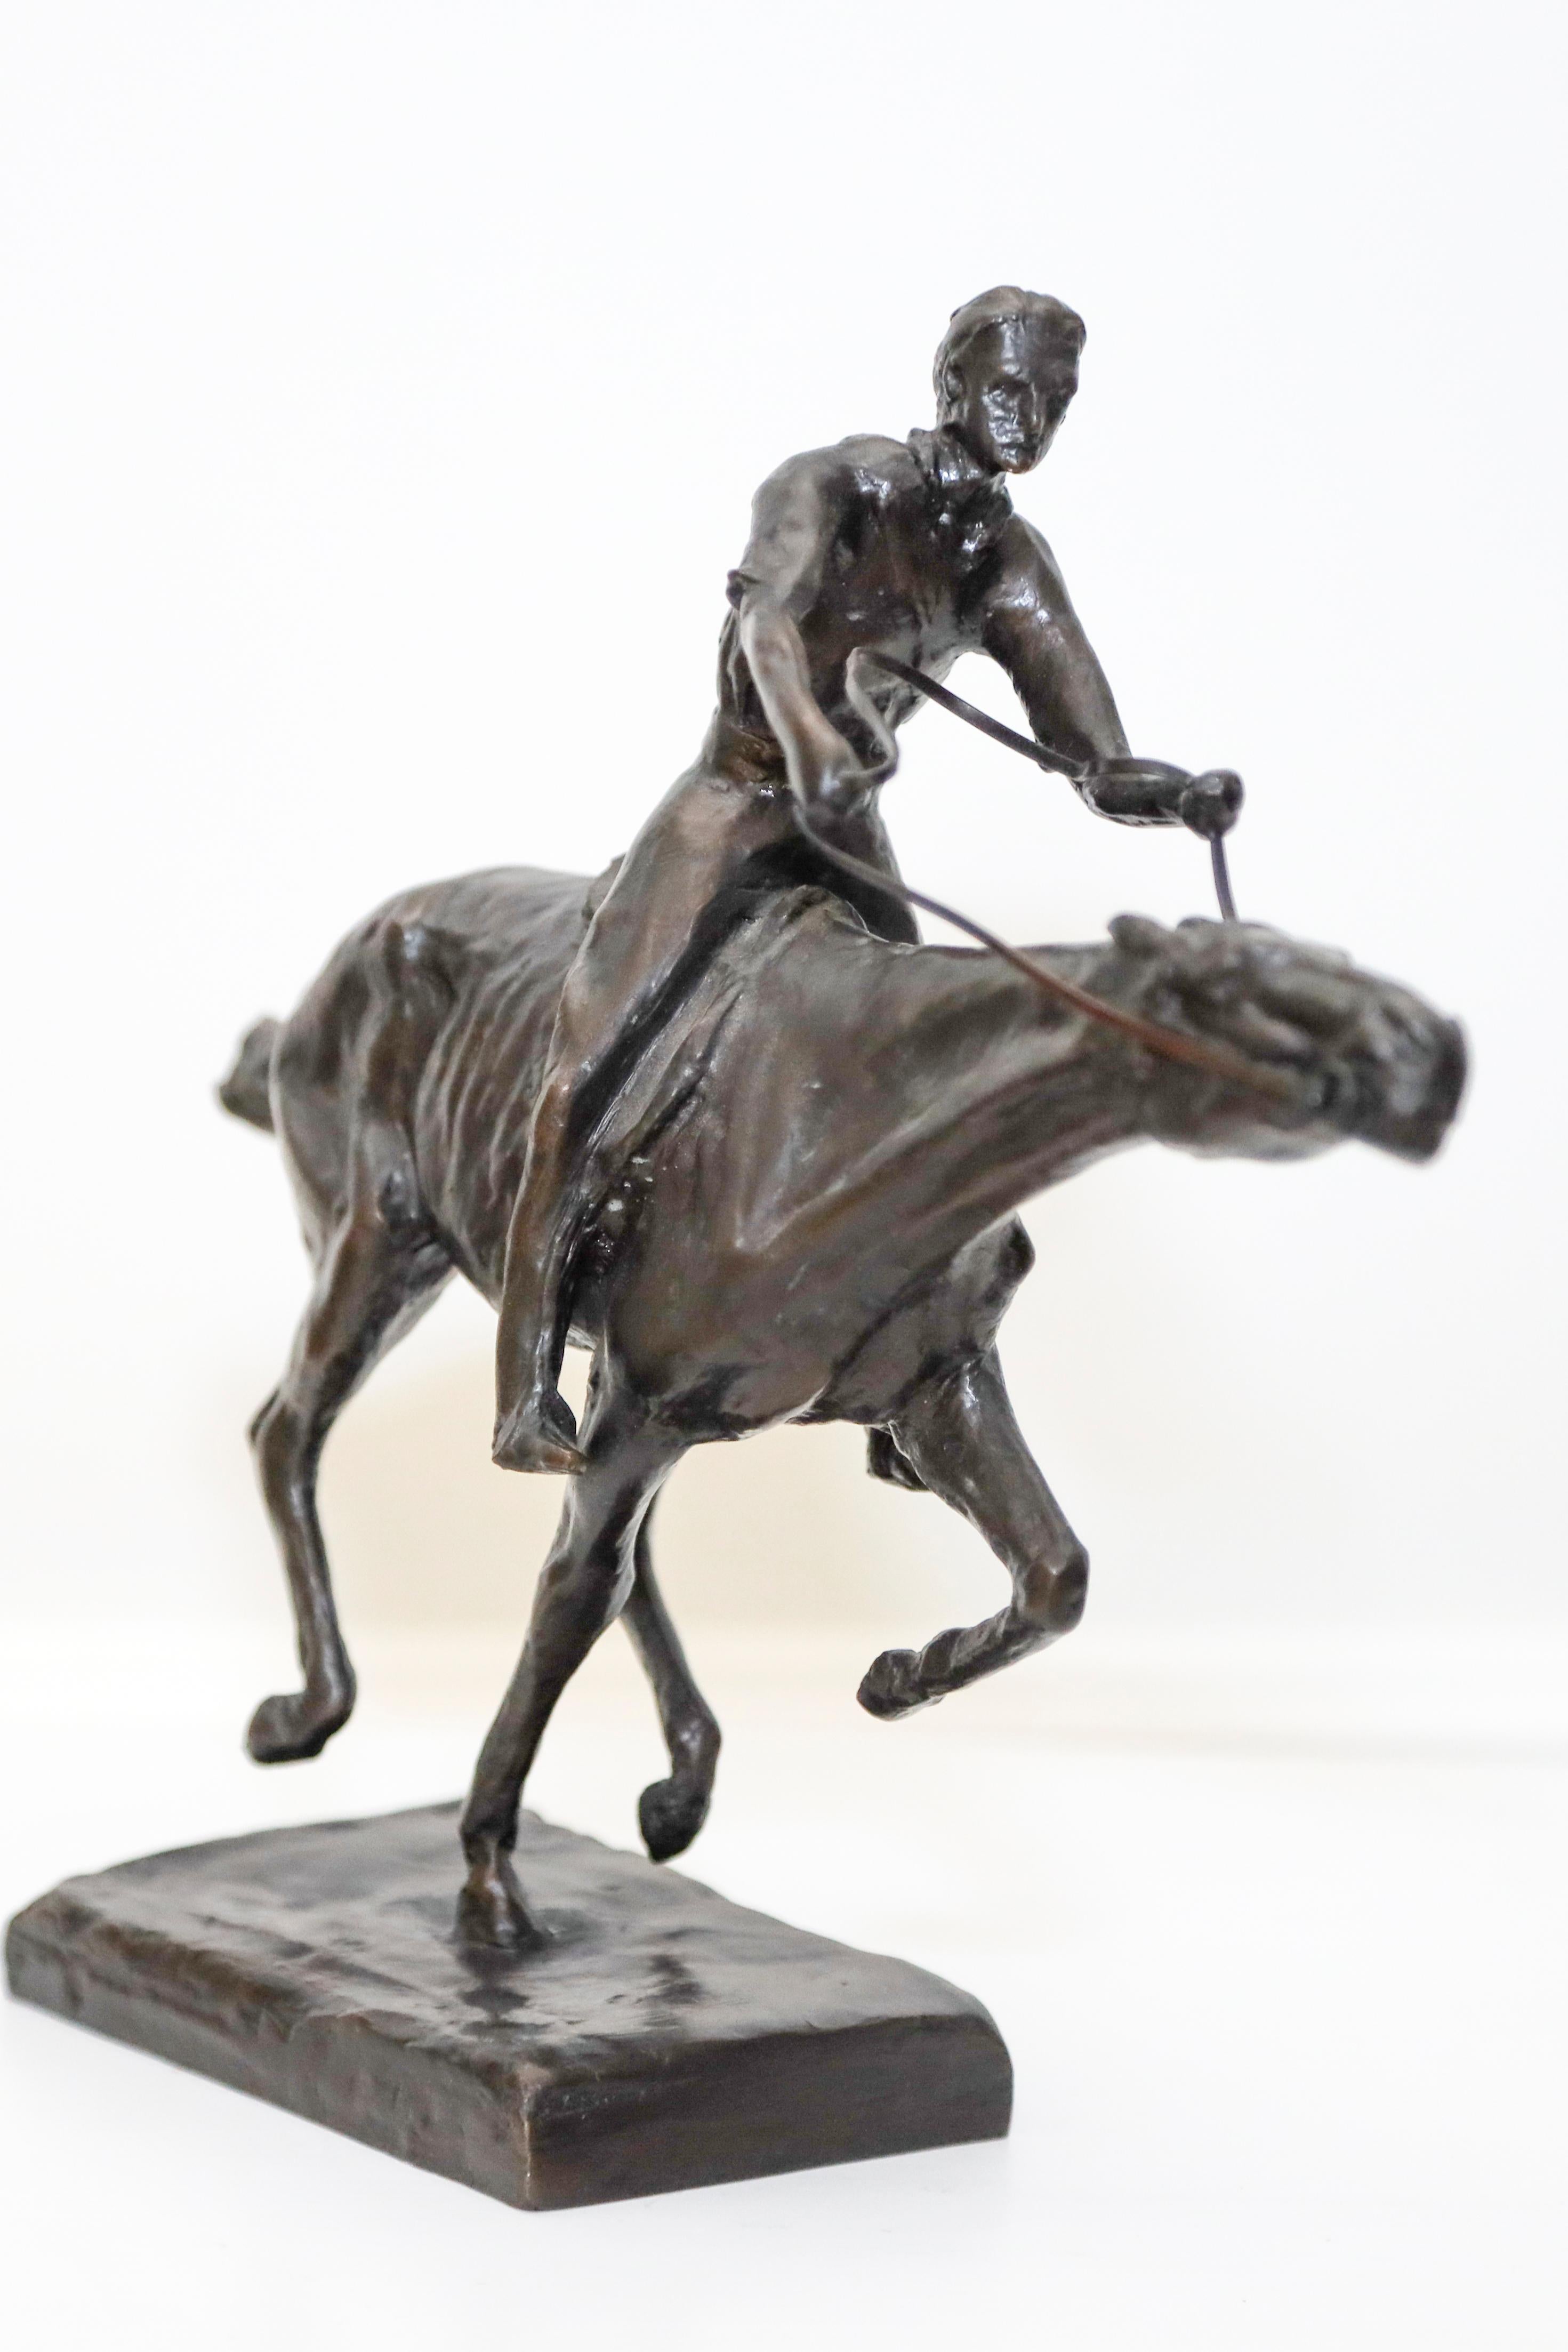 Les spécialités de Rumsey comprenaient des sculptures équestres - des portraits de joueurs de polo et de chevaux de prix, ainsi que de cow-boys, de bétail et de chevaux en tant que métaphores. Il travaillait principalement le bronze et la pierre,